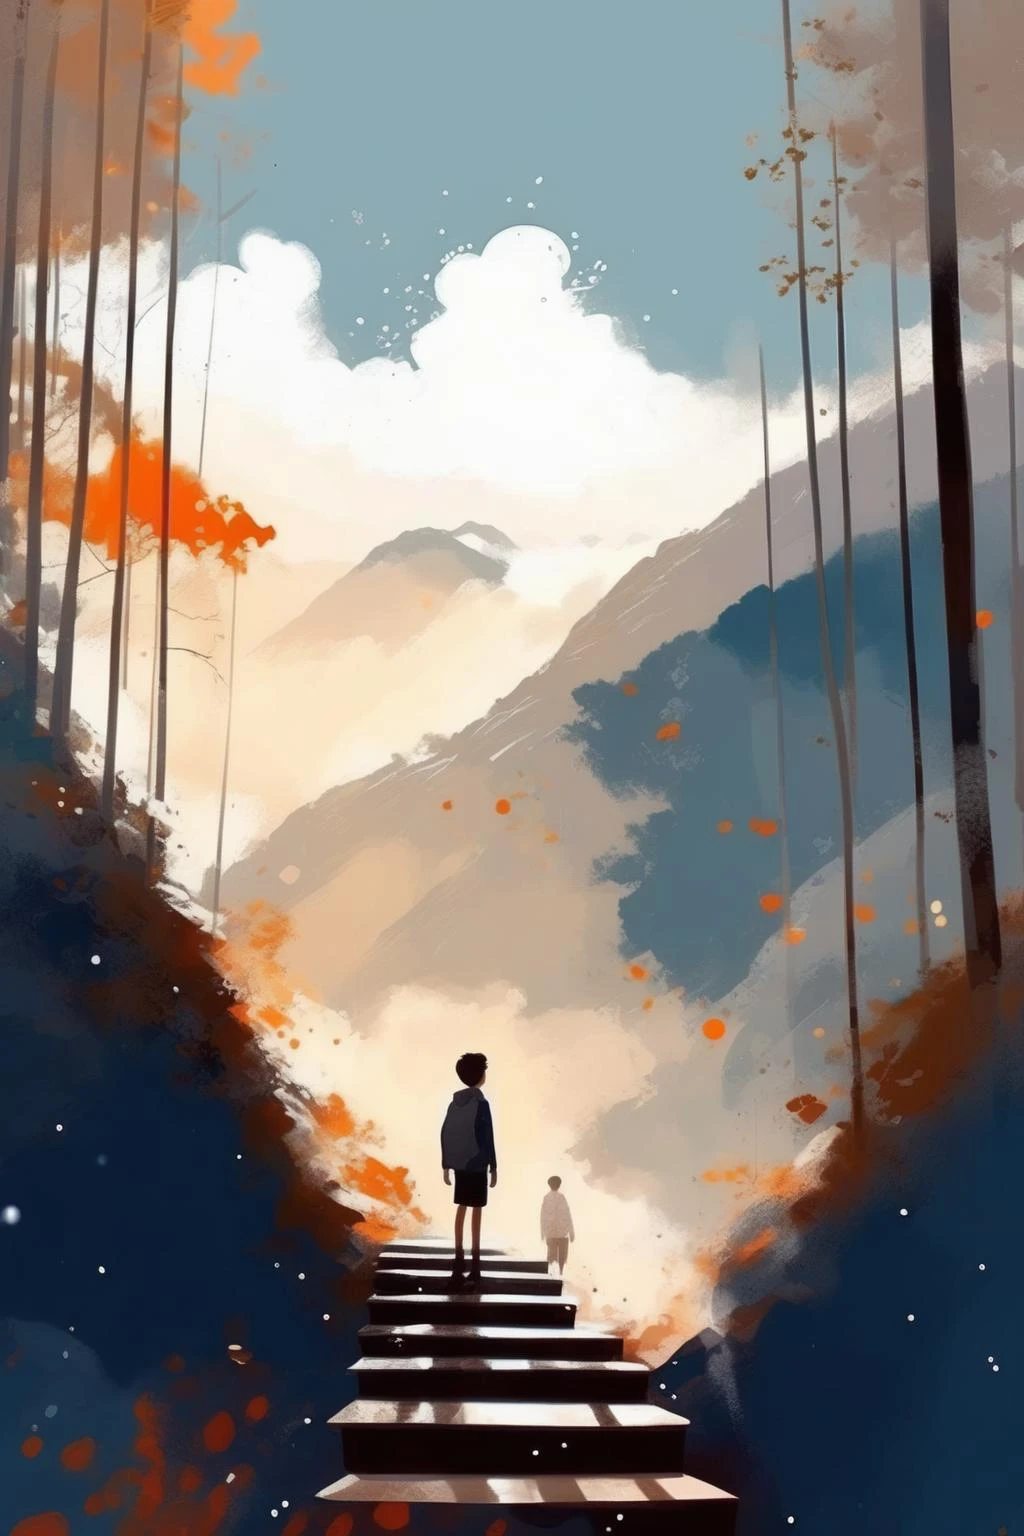 Pascal Campion Style - เด็กชายยืนอยู่บนบันไดยาวในภูเขา,ป่า,ท้องฟ้า, คลาวด์